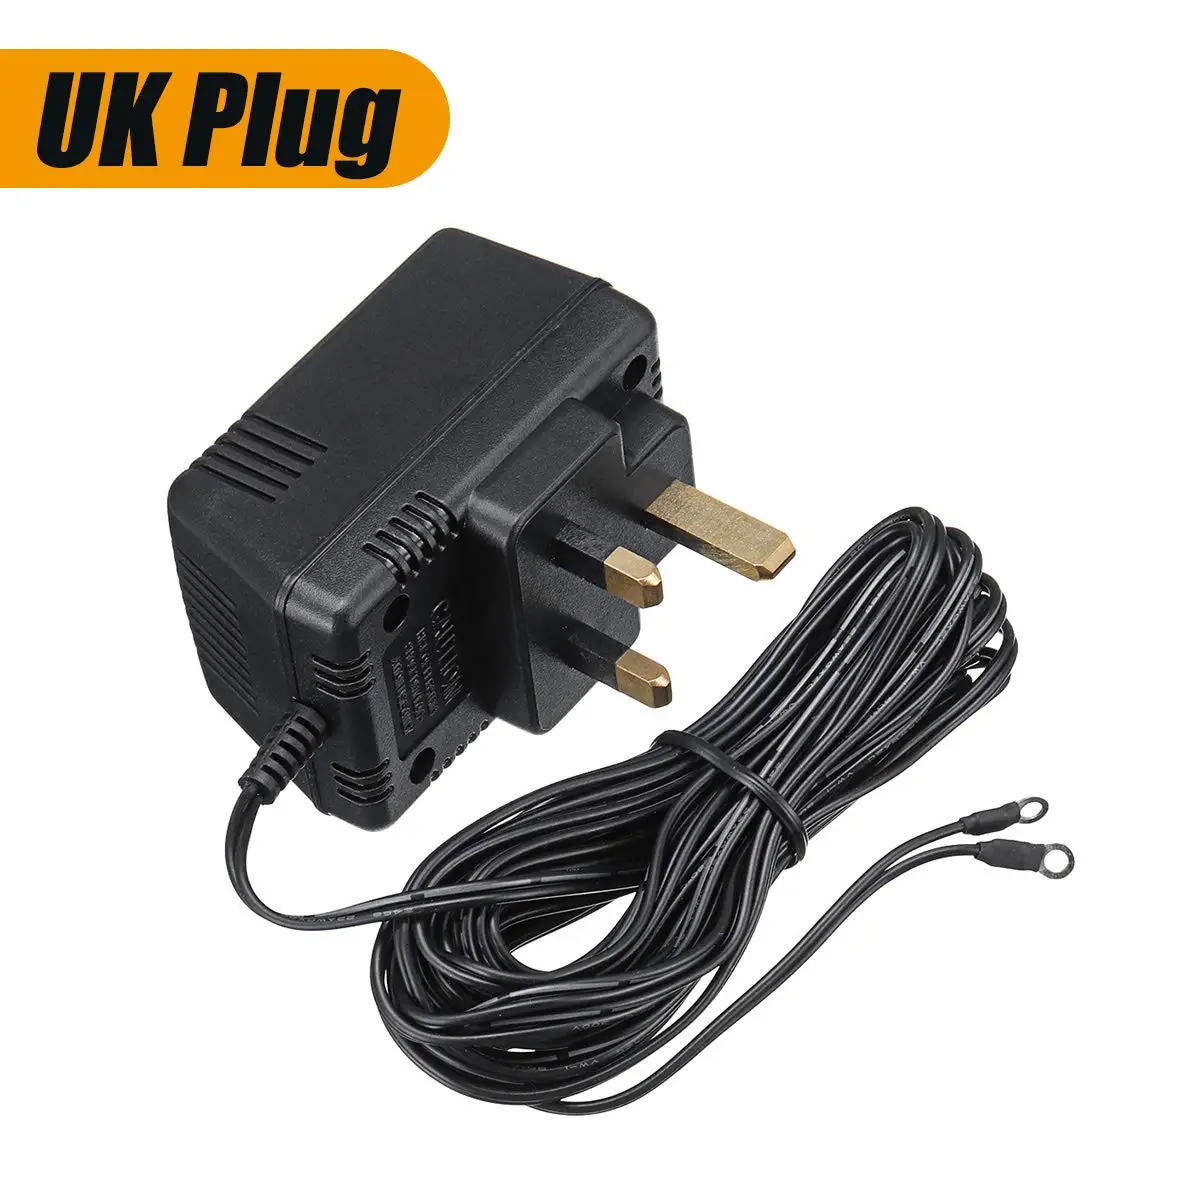 US UK EU 18V трансформатор переменного тока Зарядное устройство для WiFi беспроводной дверной звонок блок питания камеры IP видеосвязь кольцо 220 V-240 V до 5 метров